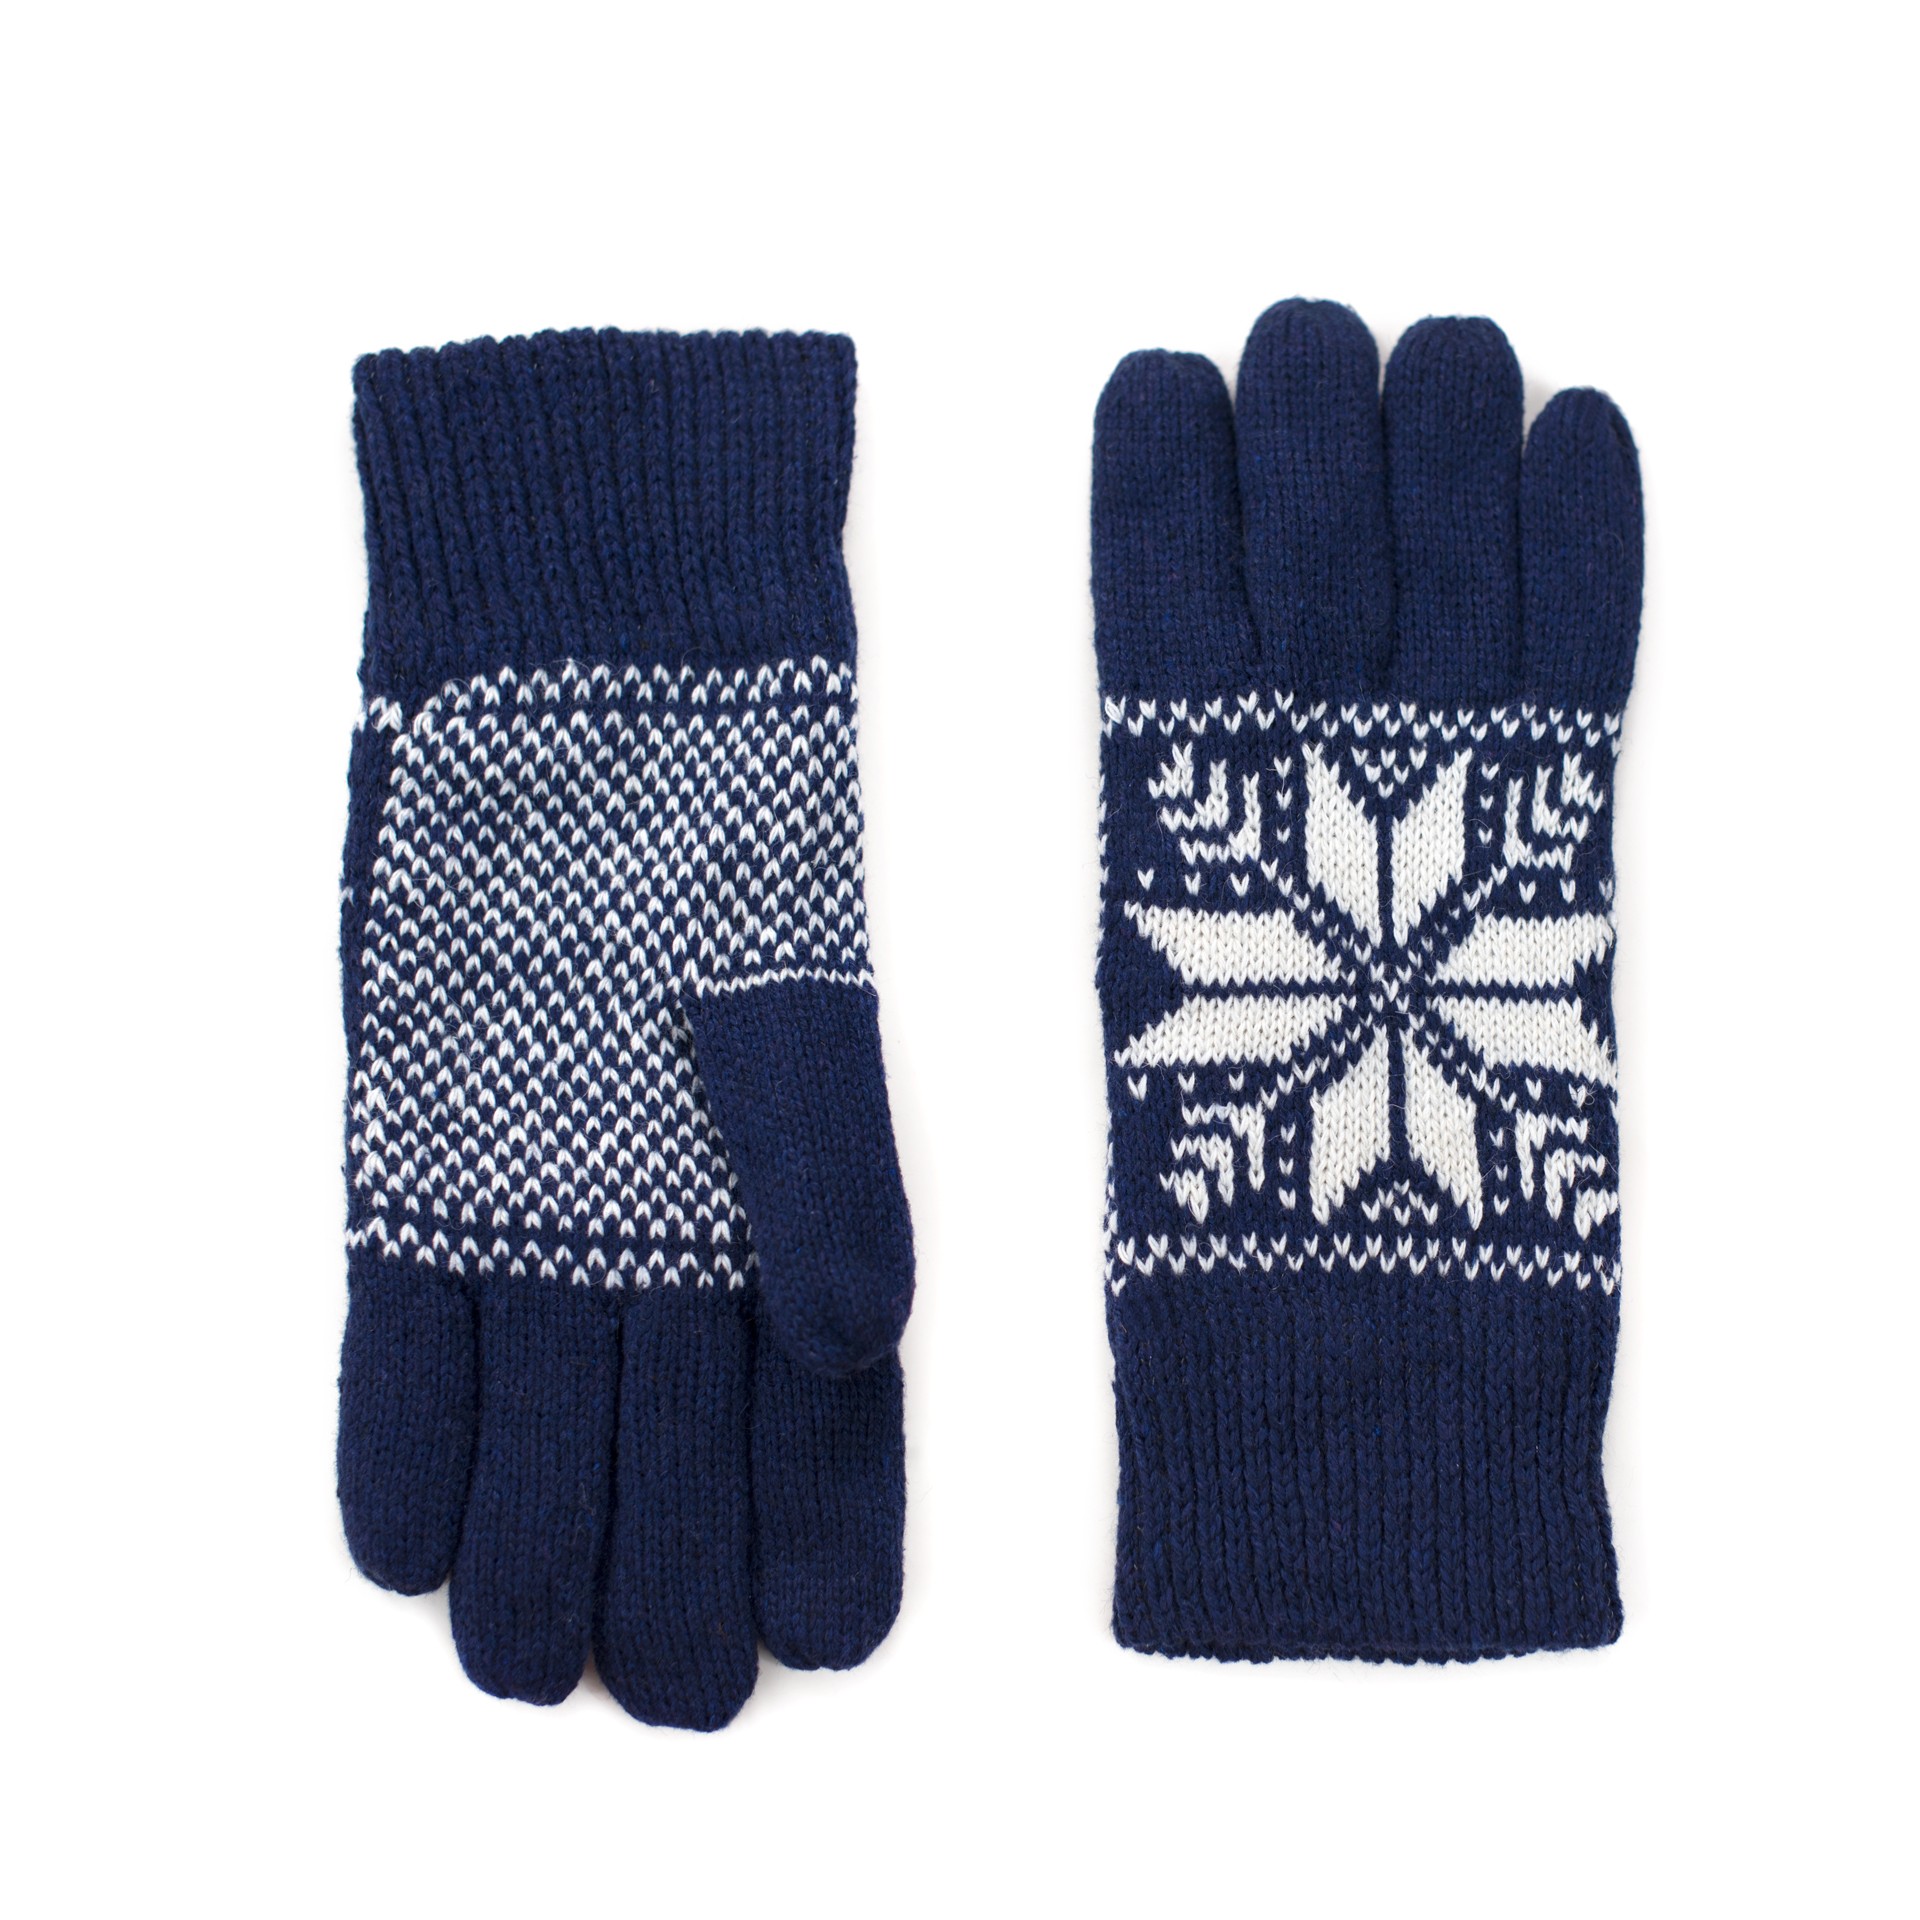 Art Of Polo Unisex's Gloves rk18608 Navy Blue